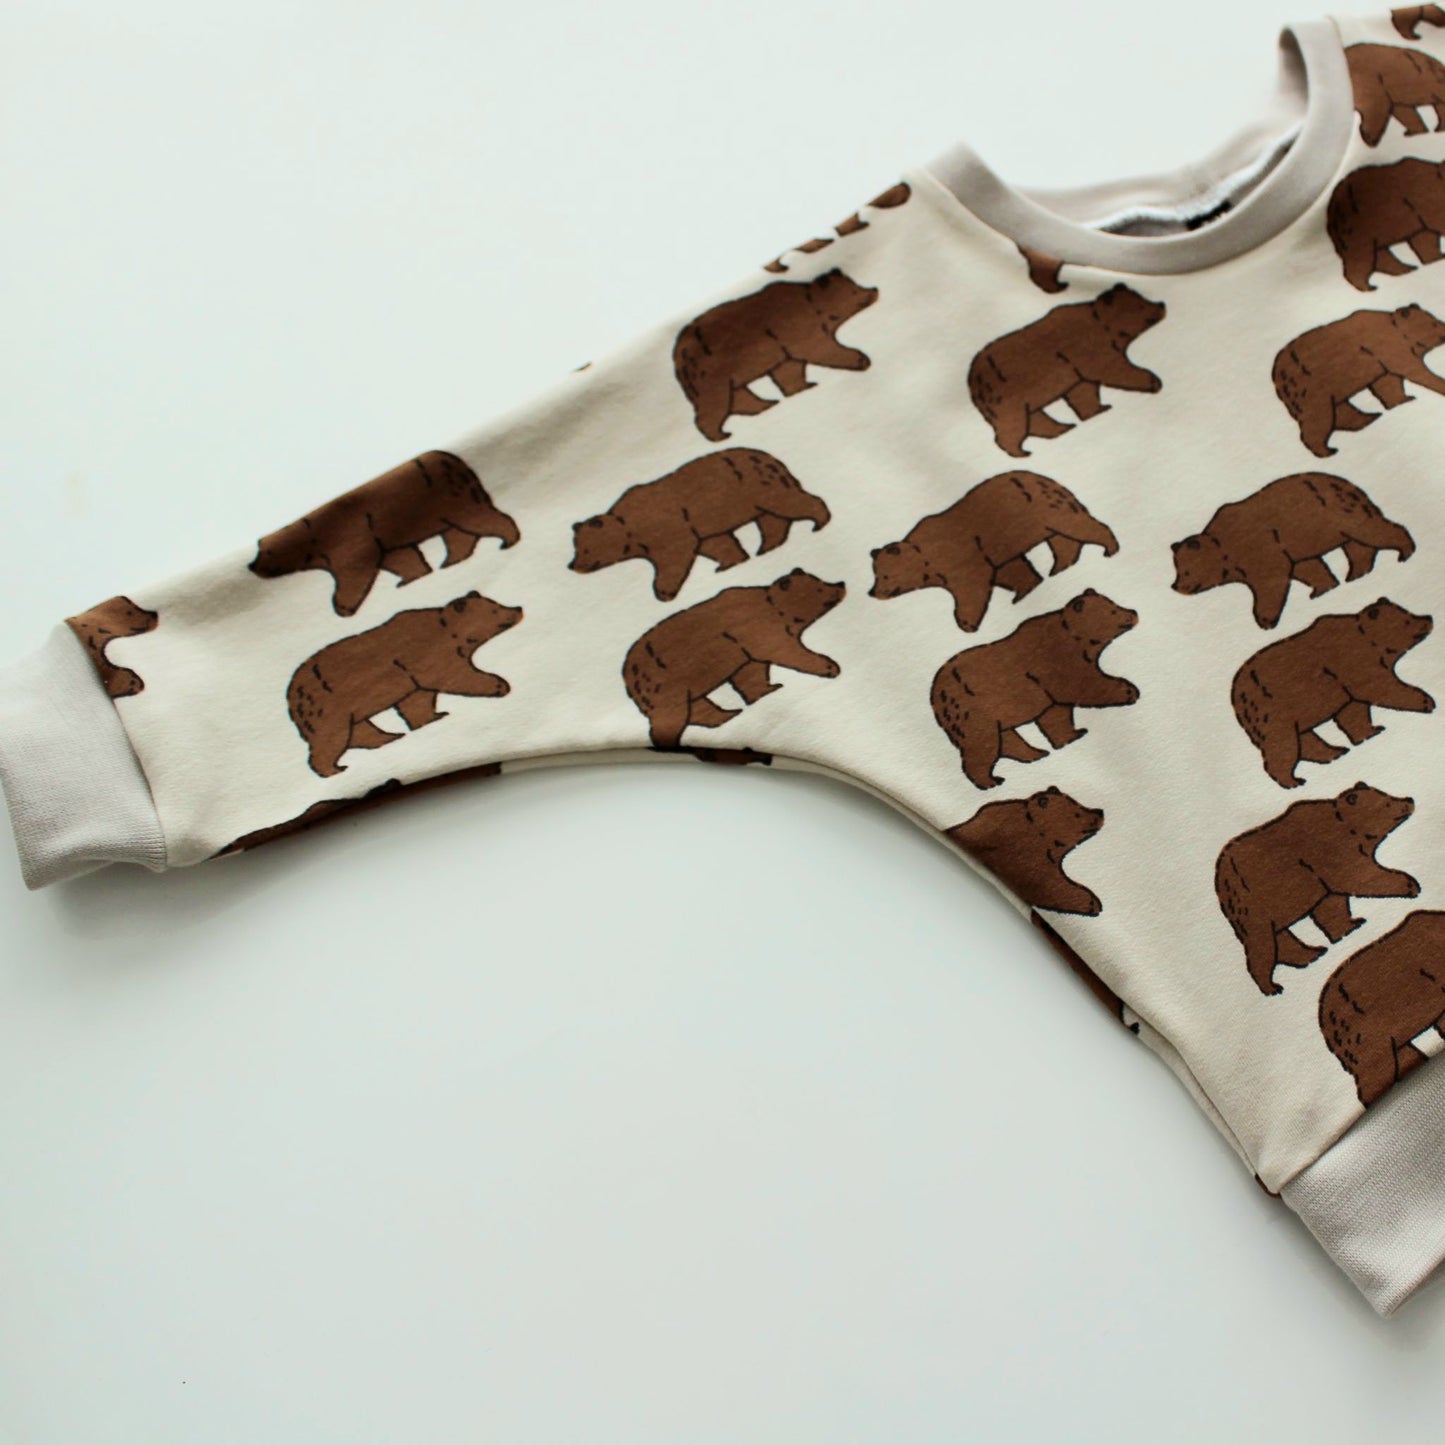 Almond Brown Bears Sweatshirt